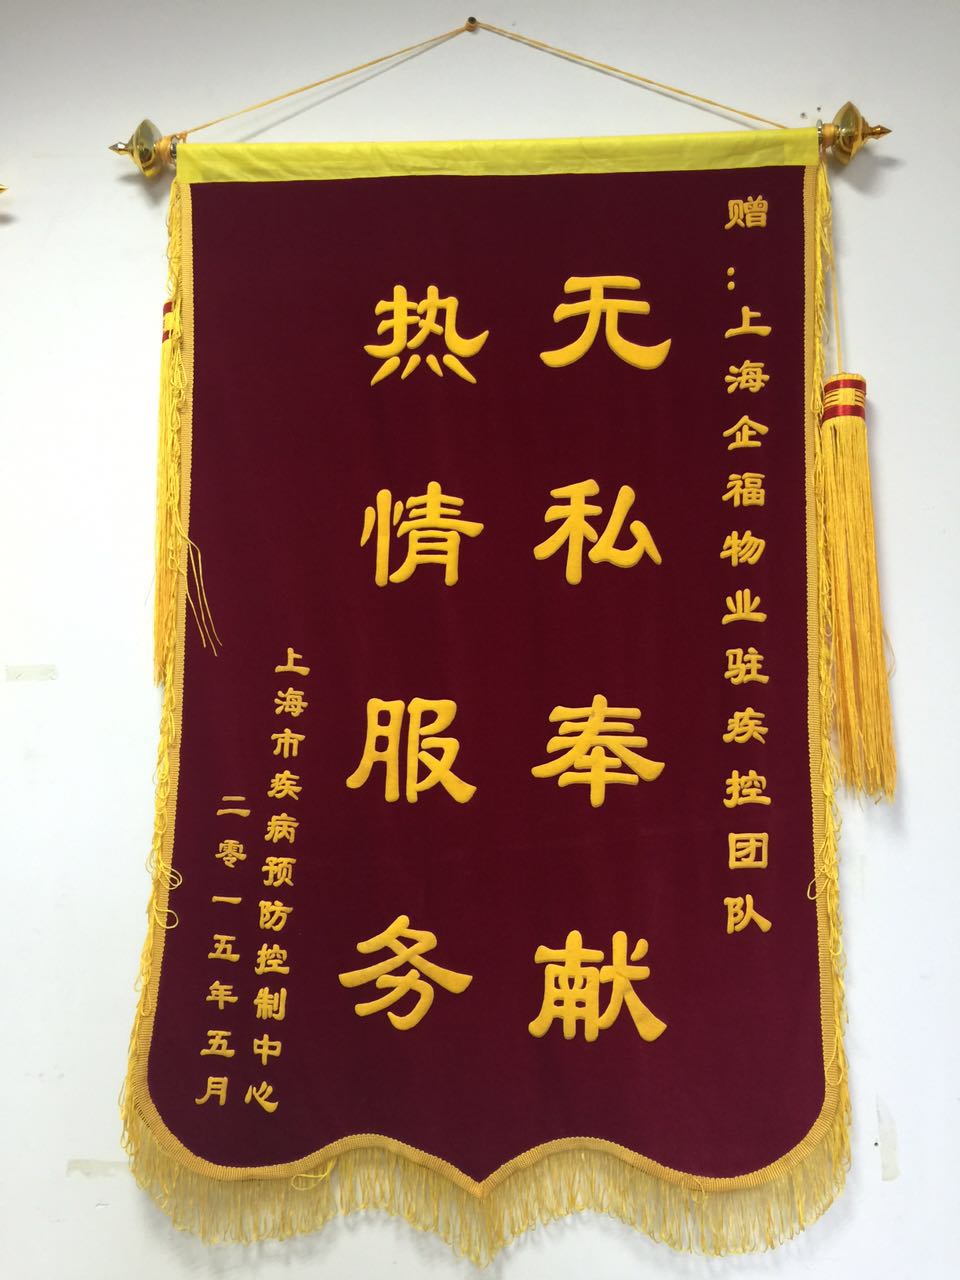 上海疾病预防中心赠送锦旗